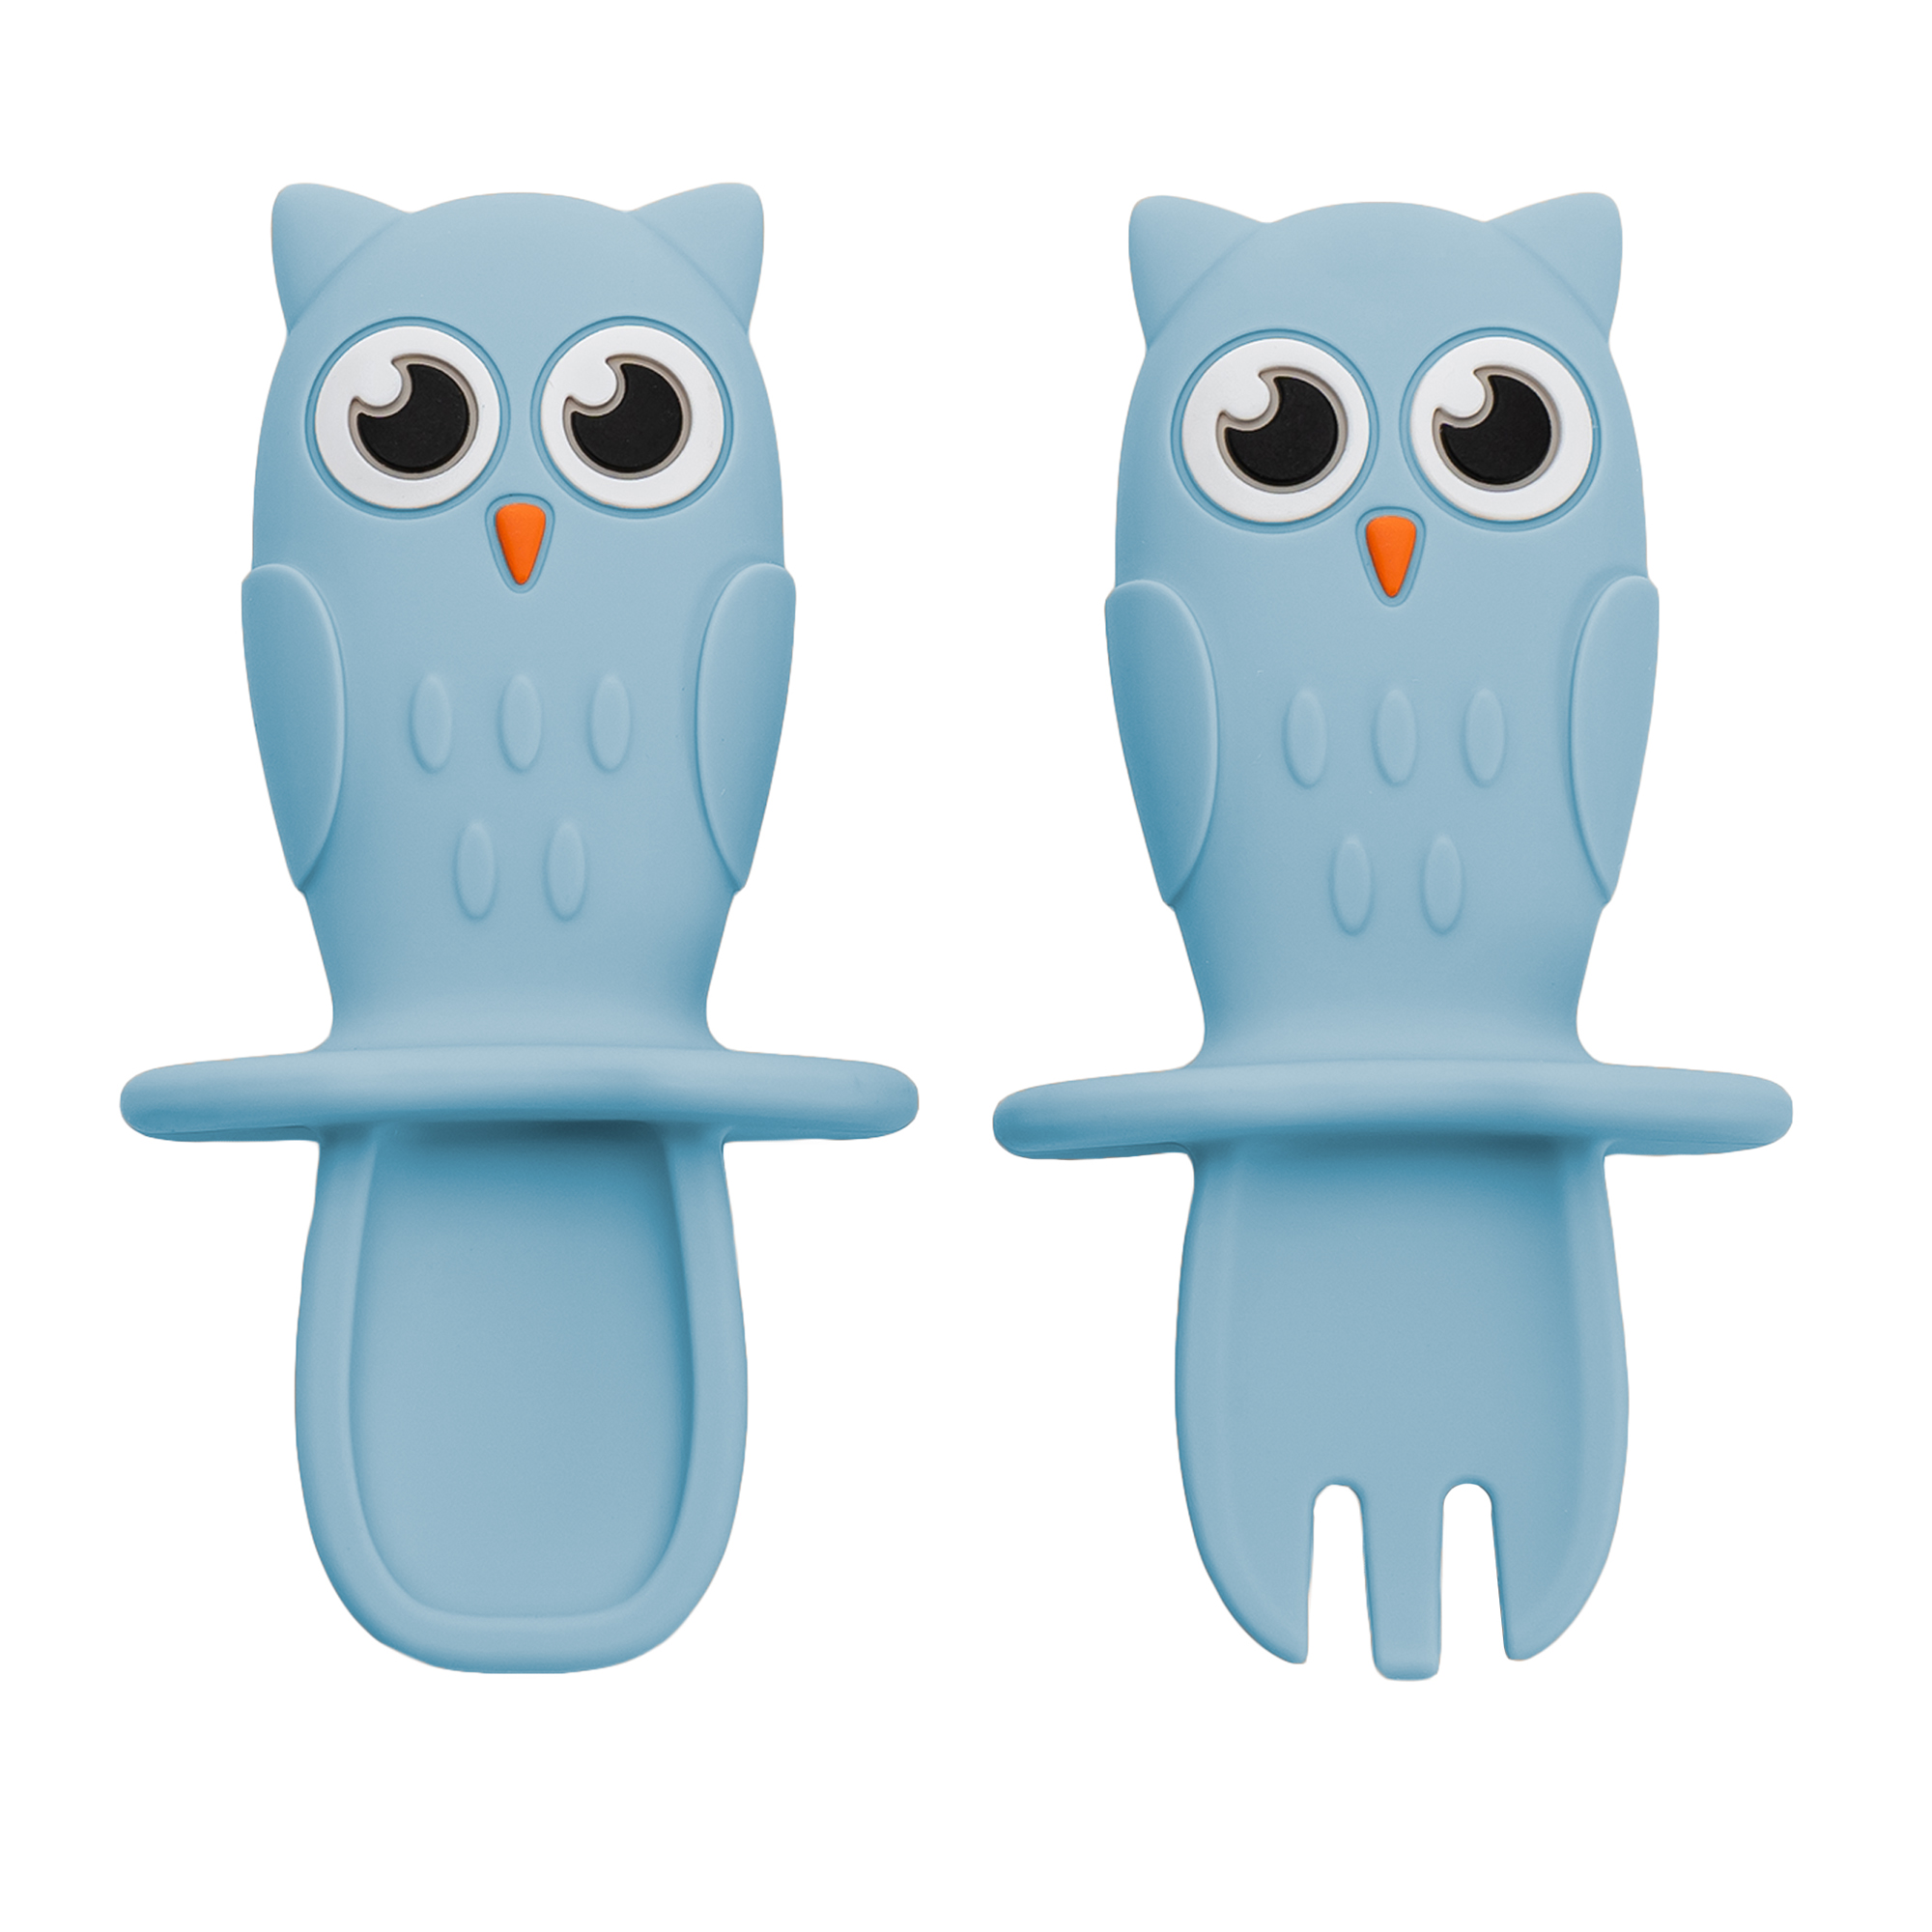 Lingurite si tacamuri - Appekids Set tacamuri din silicon Owl culoare Aqua Blue, medik-on.ro